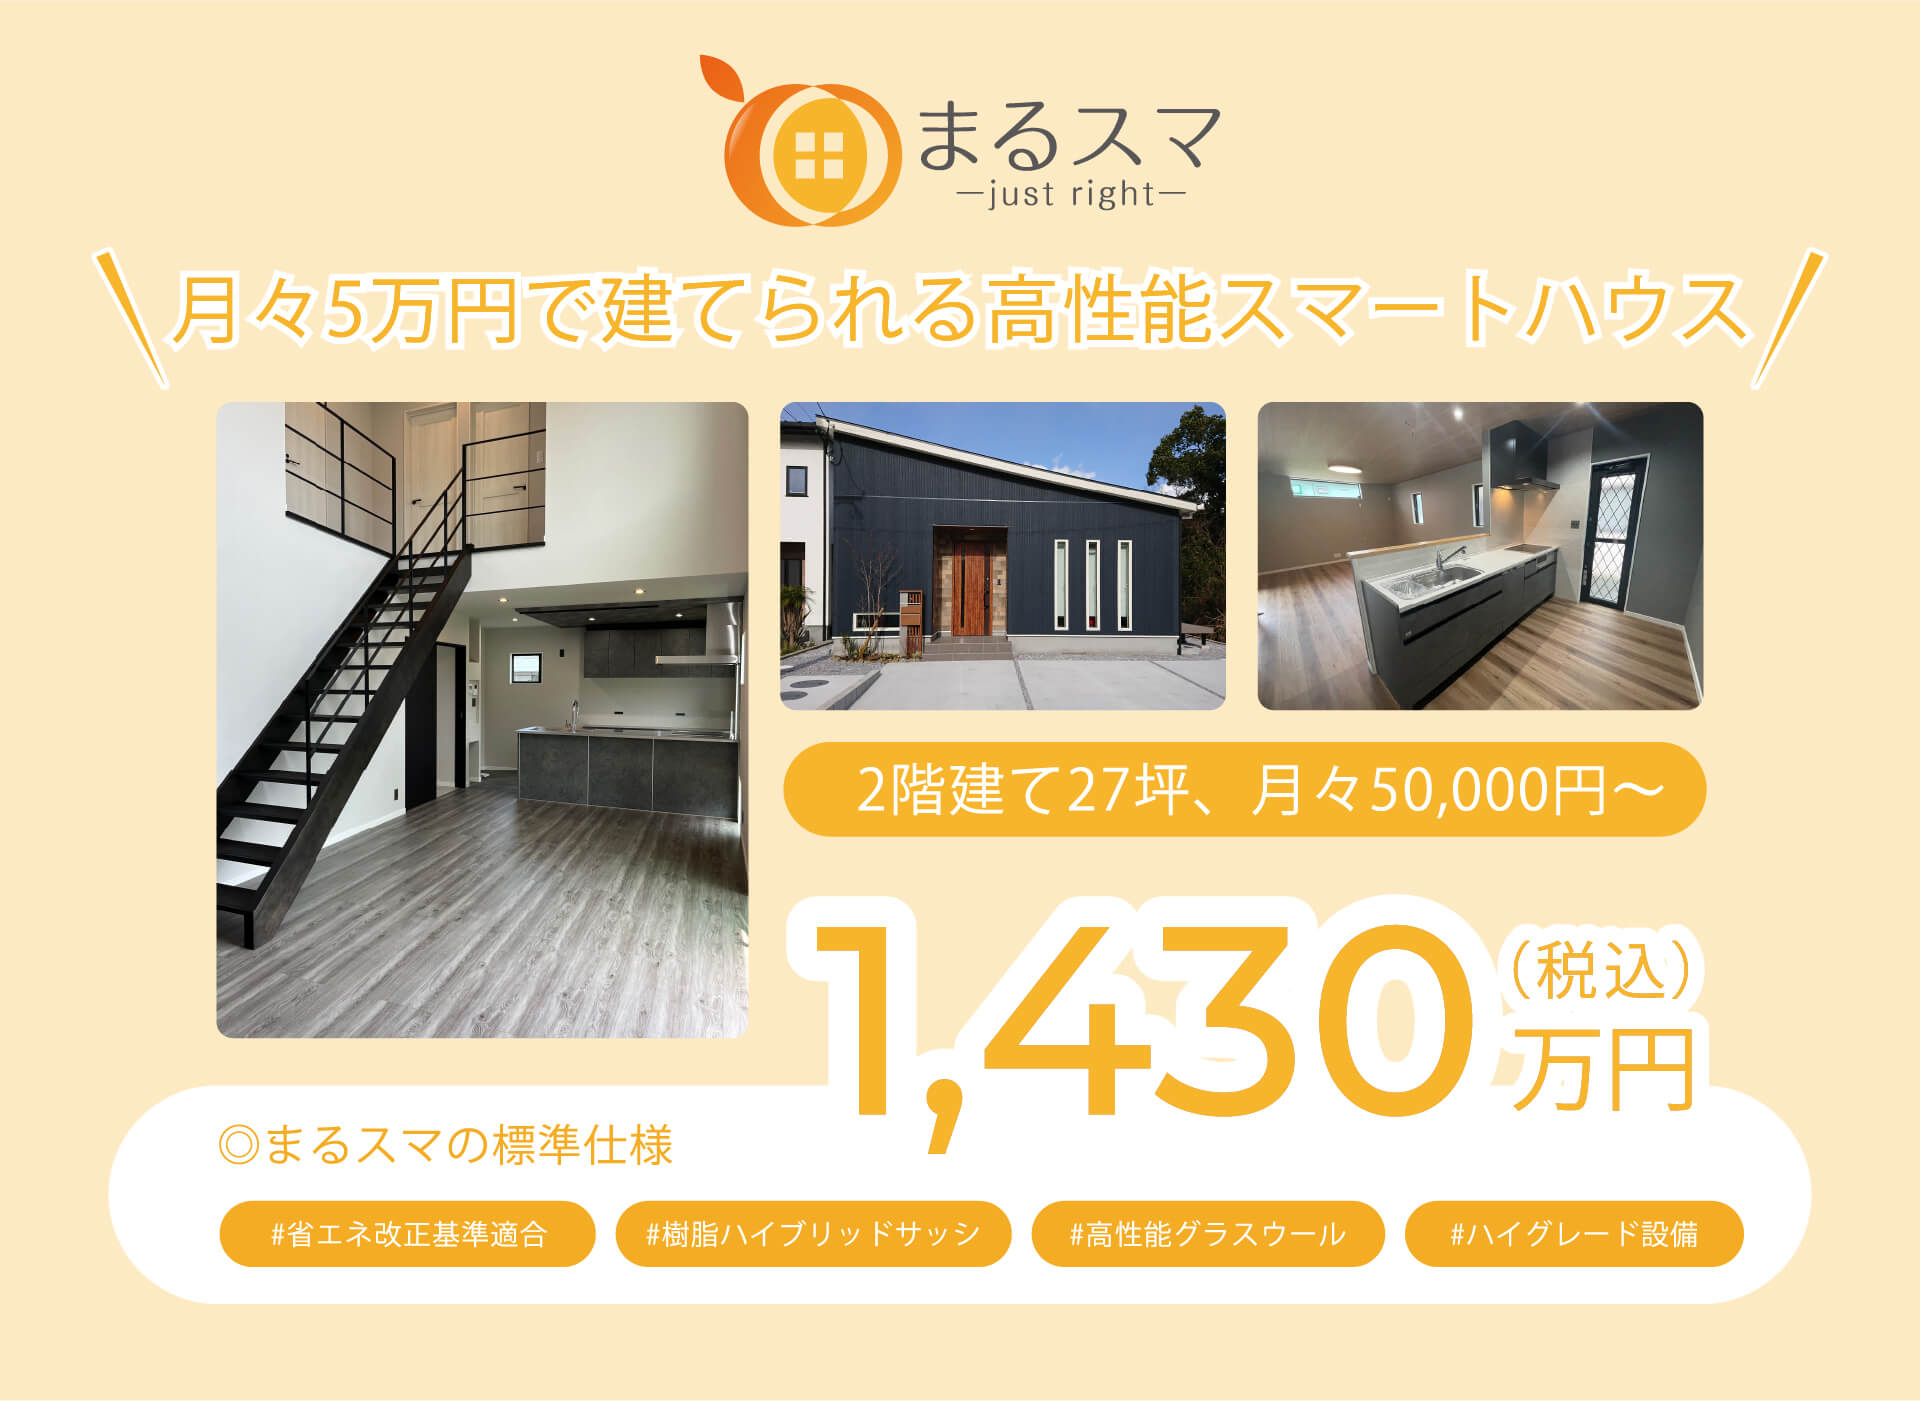 月々5万円で建てられる高性能スマートハウス